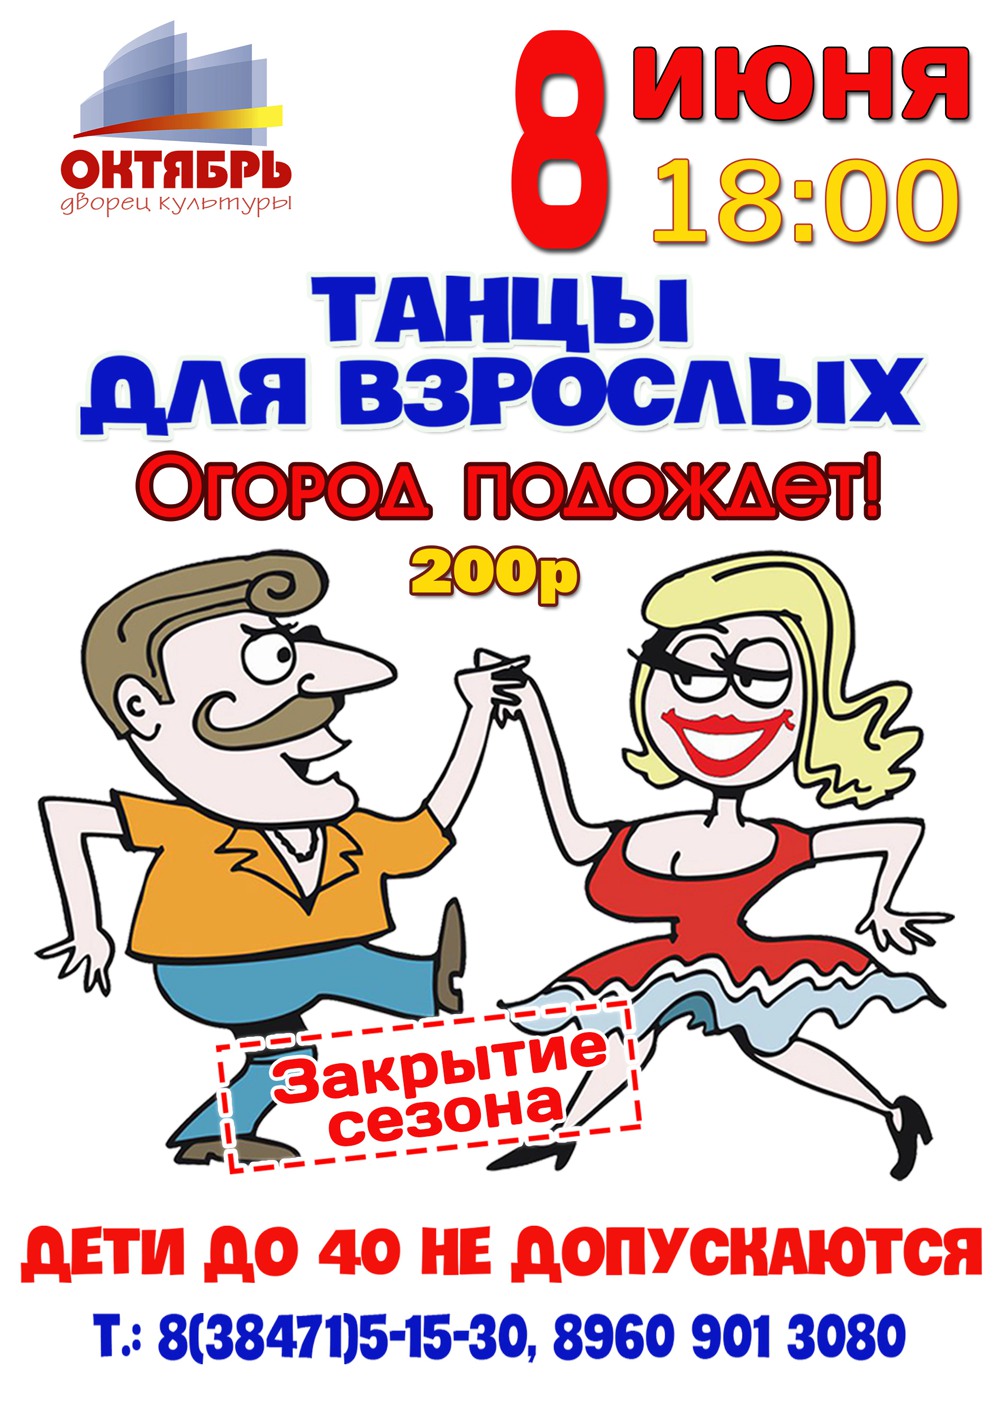 08 июня "Танцы для взрослых" в ДК "Октябрь"